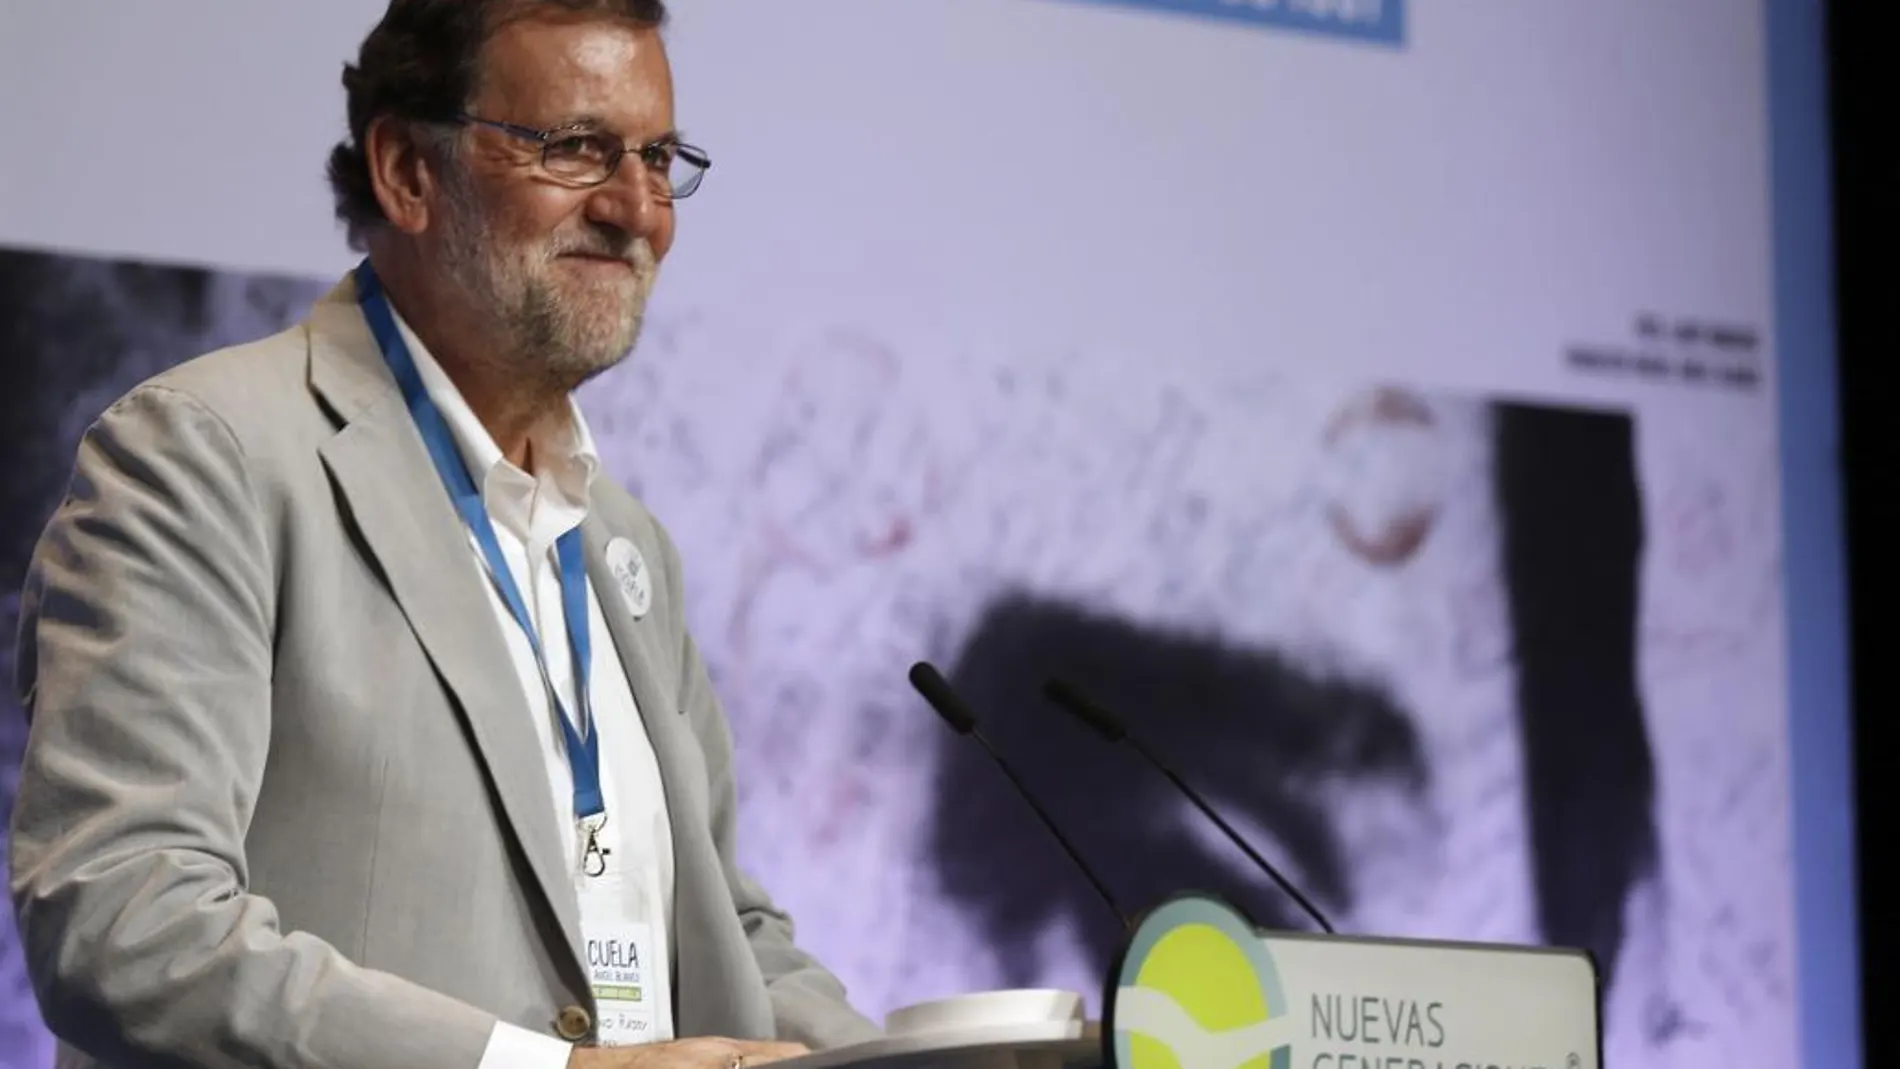 Mariano Rajoy, durante su intervención en la jornada inaugural de la Escuela Miguel Ángel Blanco, organizada hoy en Bilbao por Nuevas Generaciones del PP